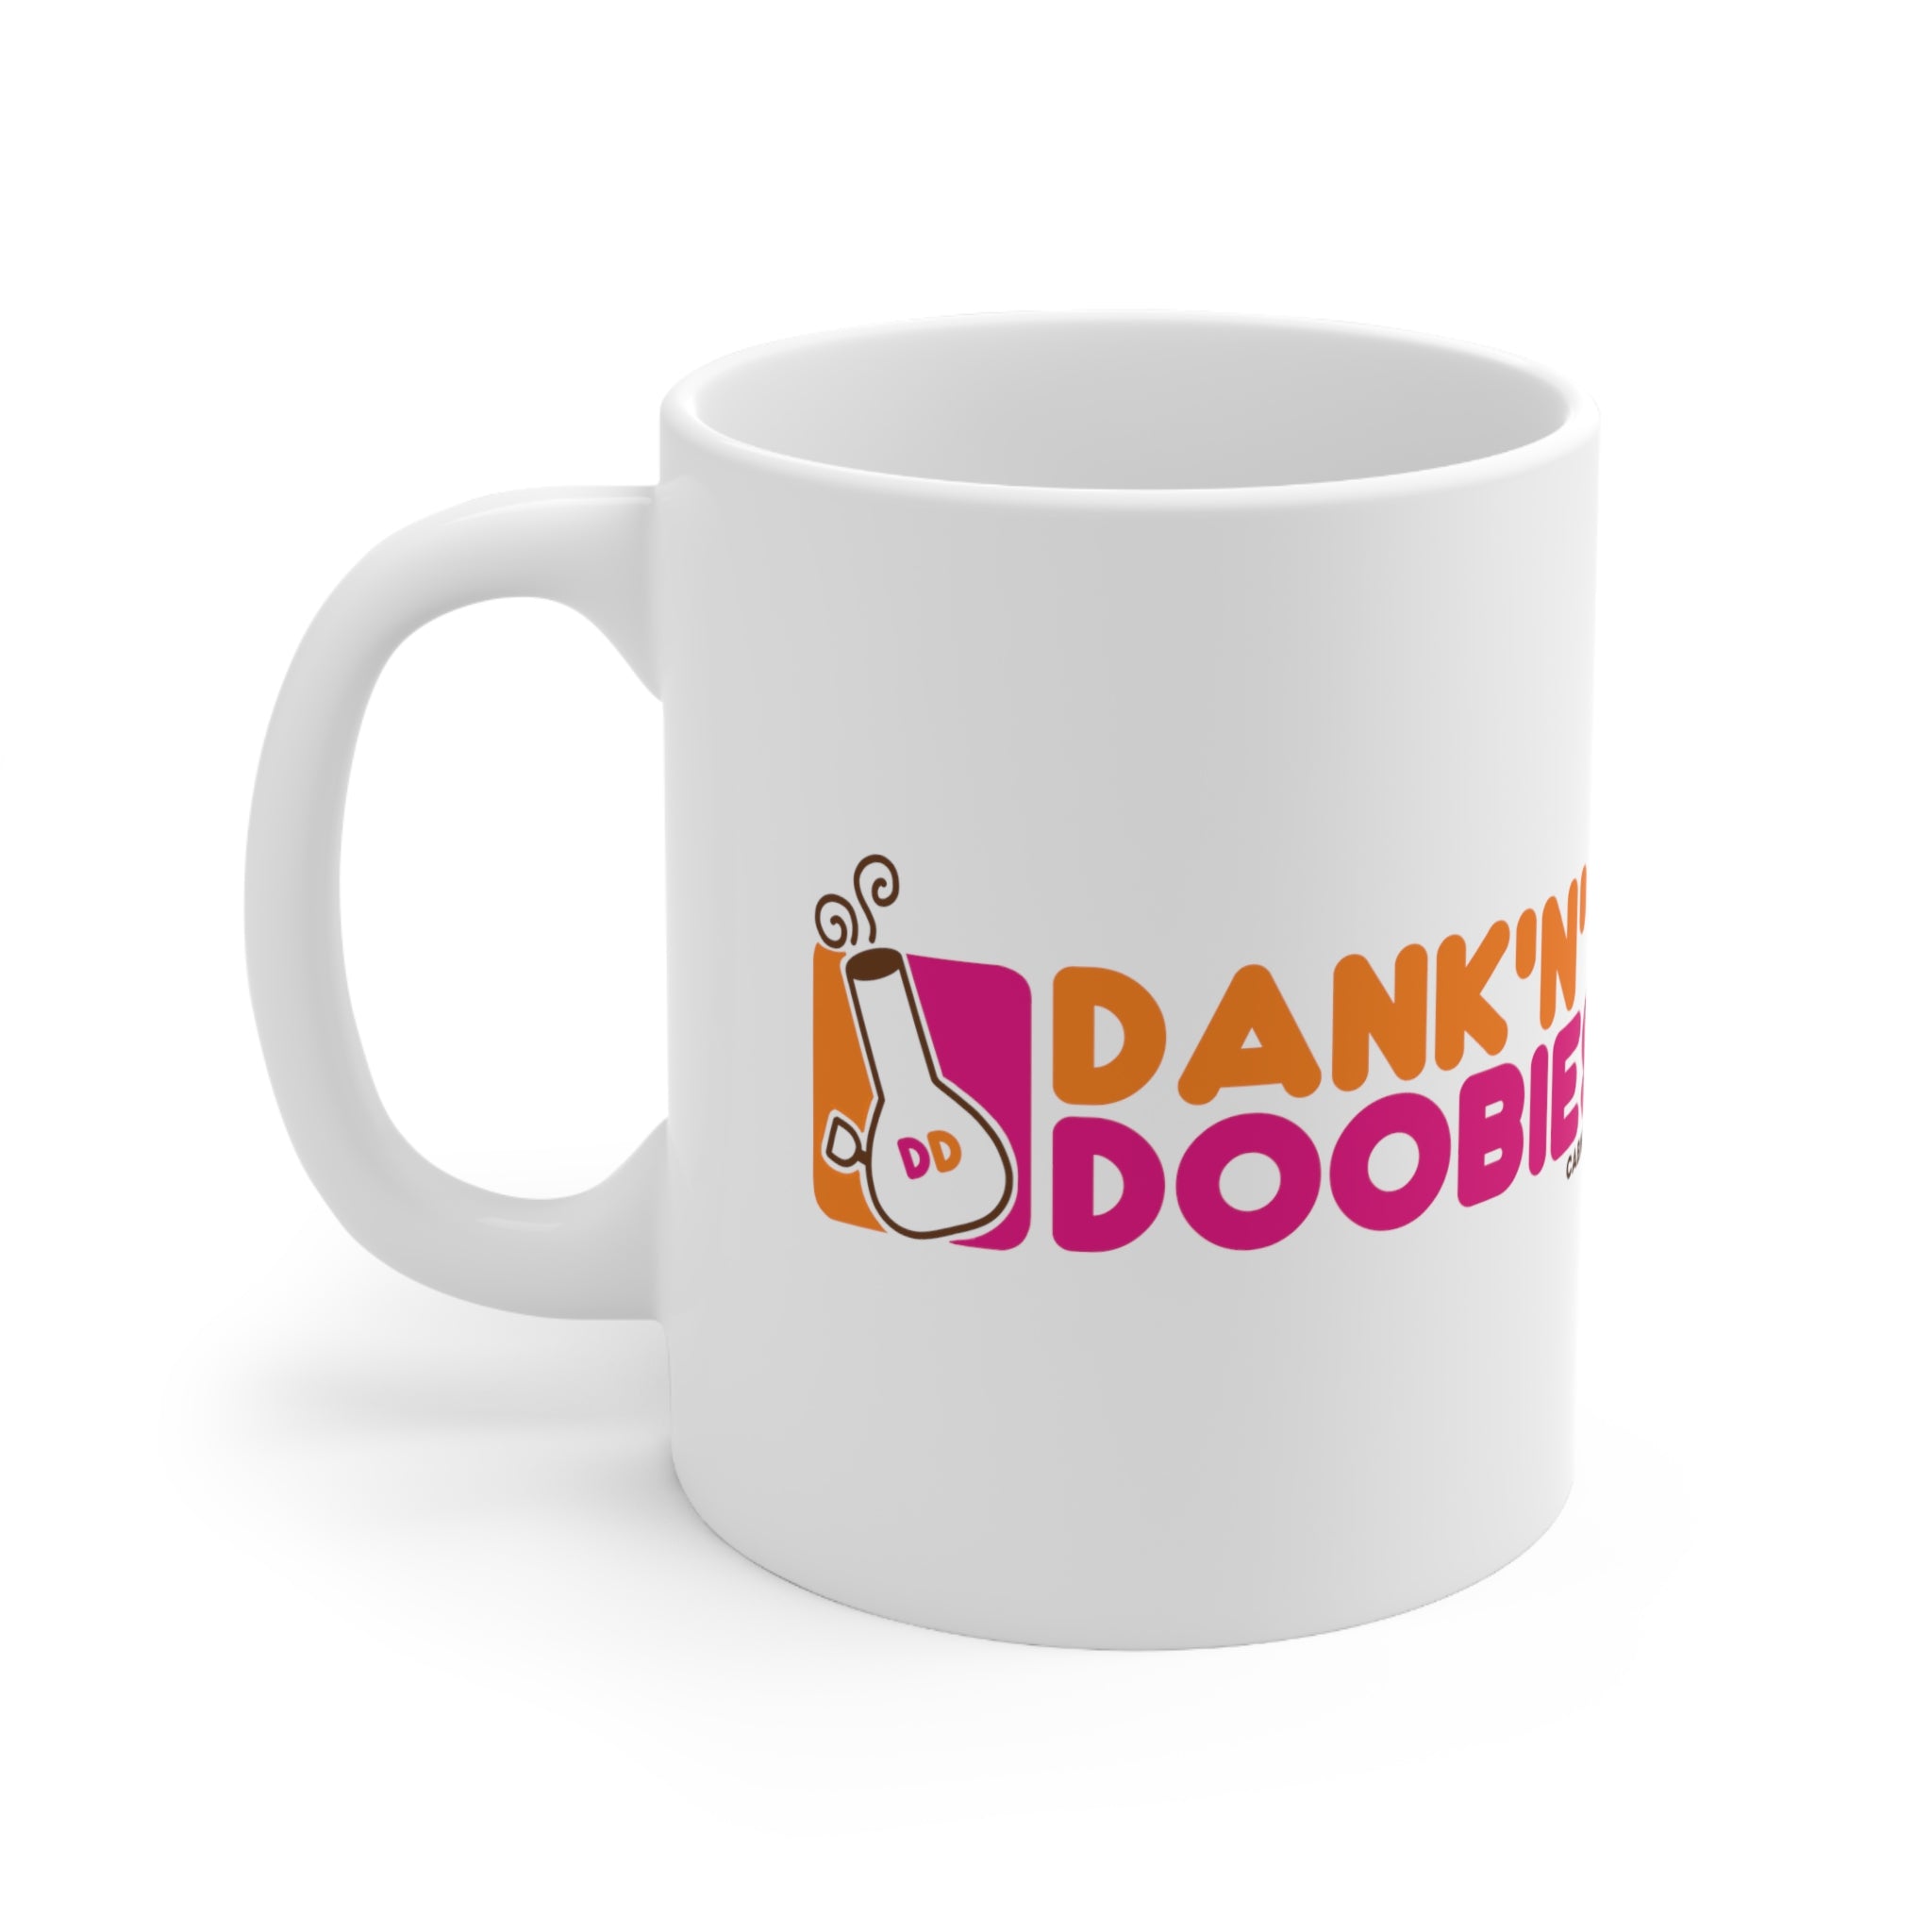 Dank'N'Doobies Mug